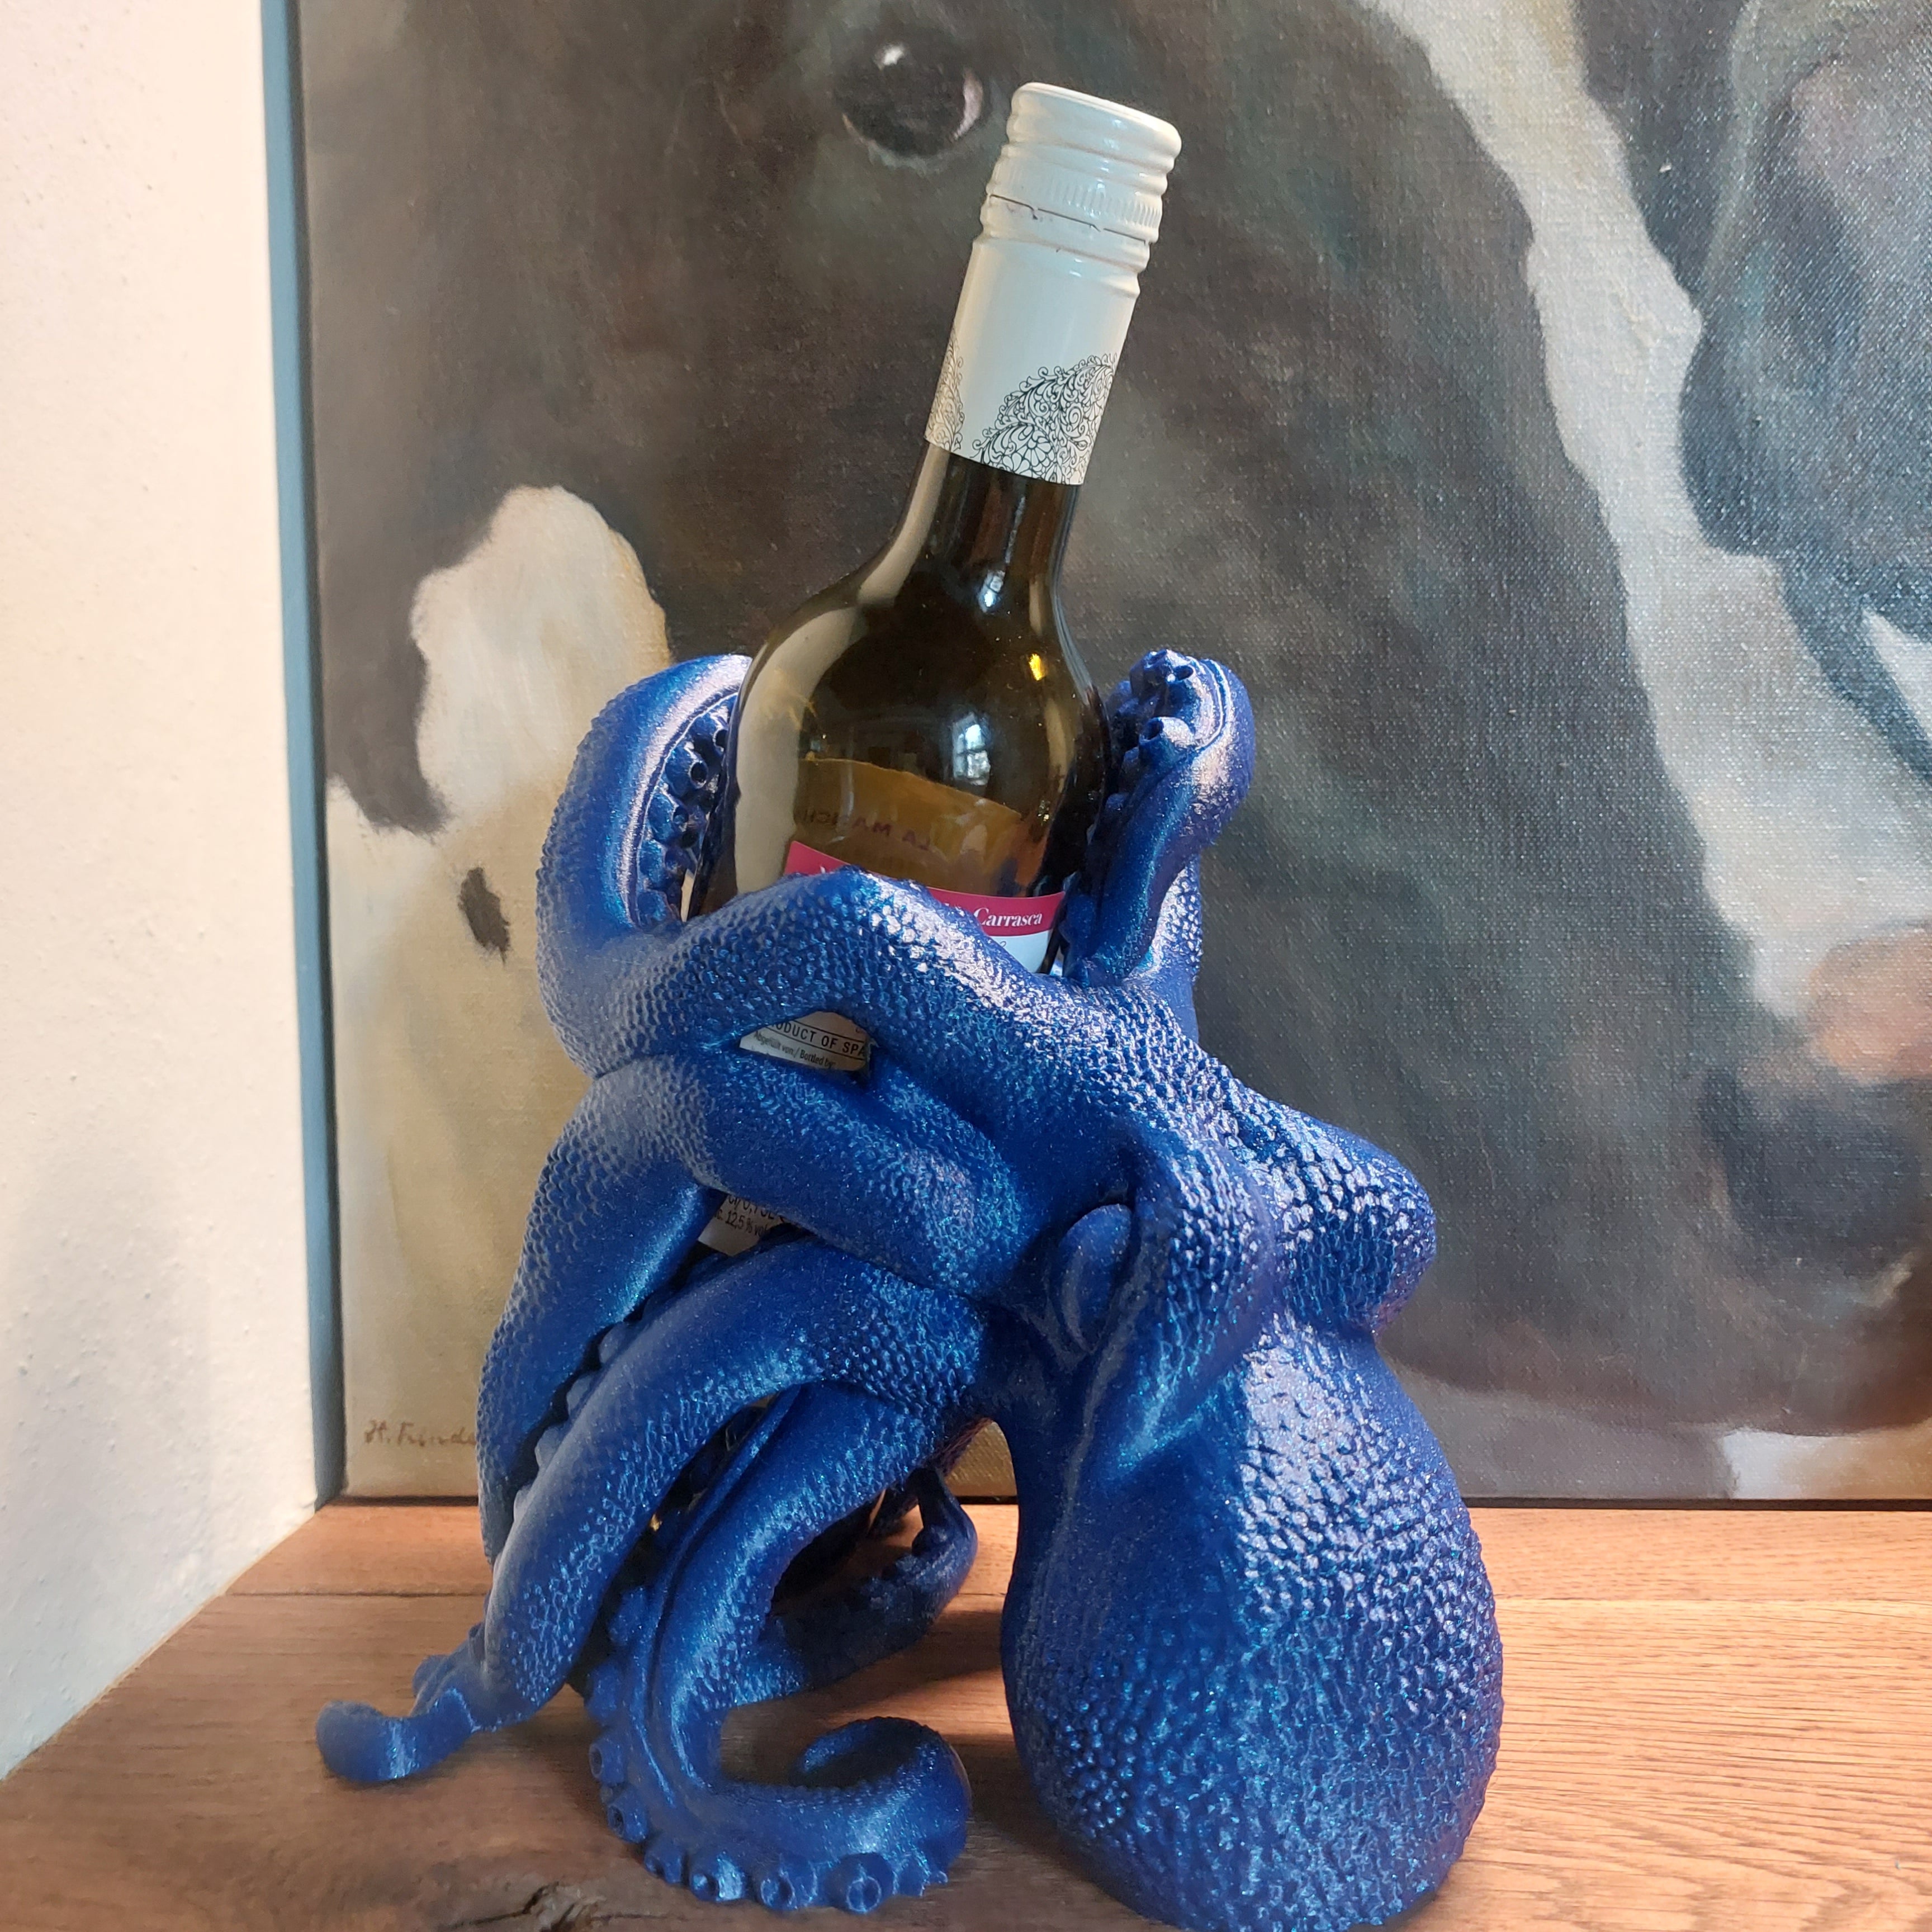 Octopus wine bottle holder 